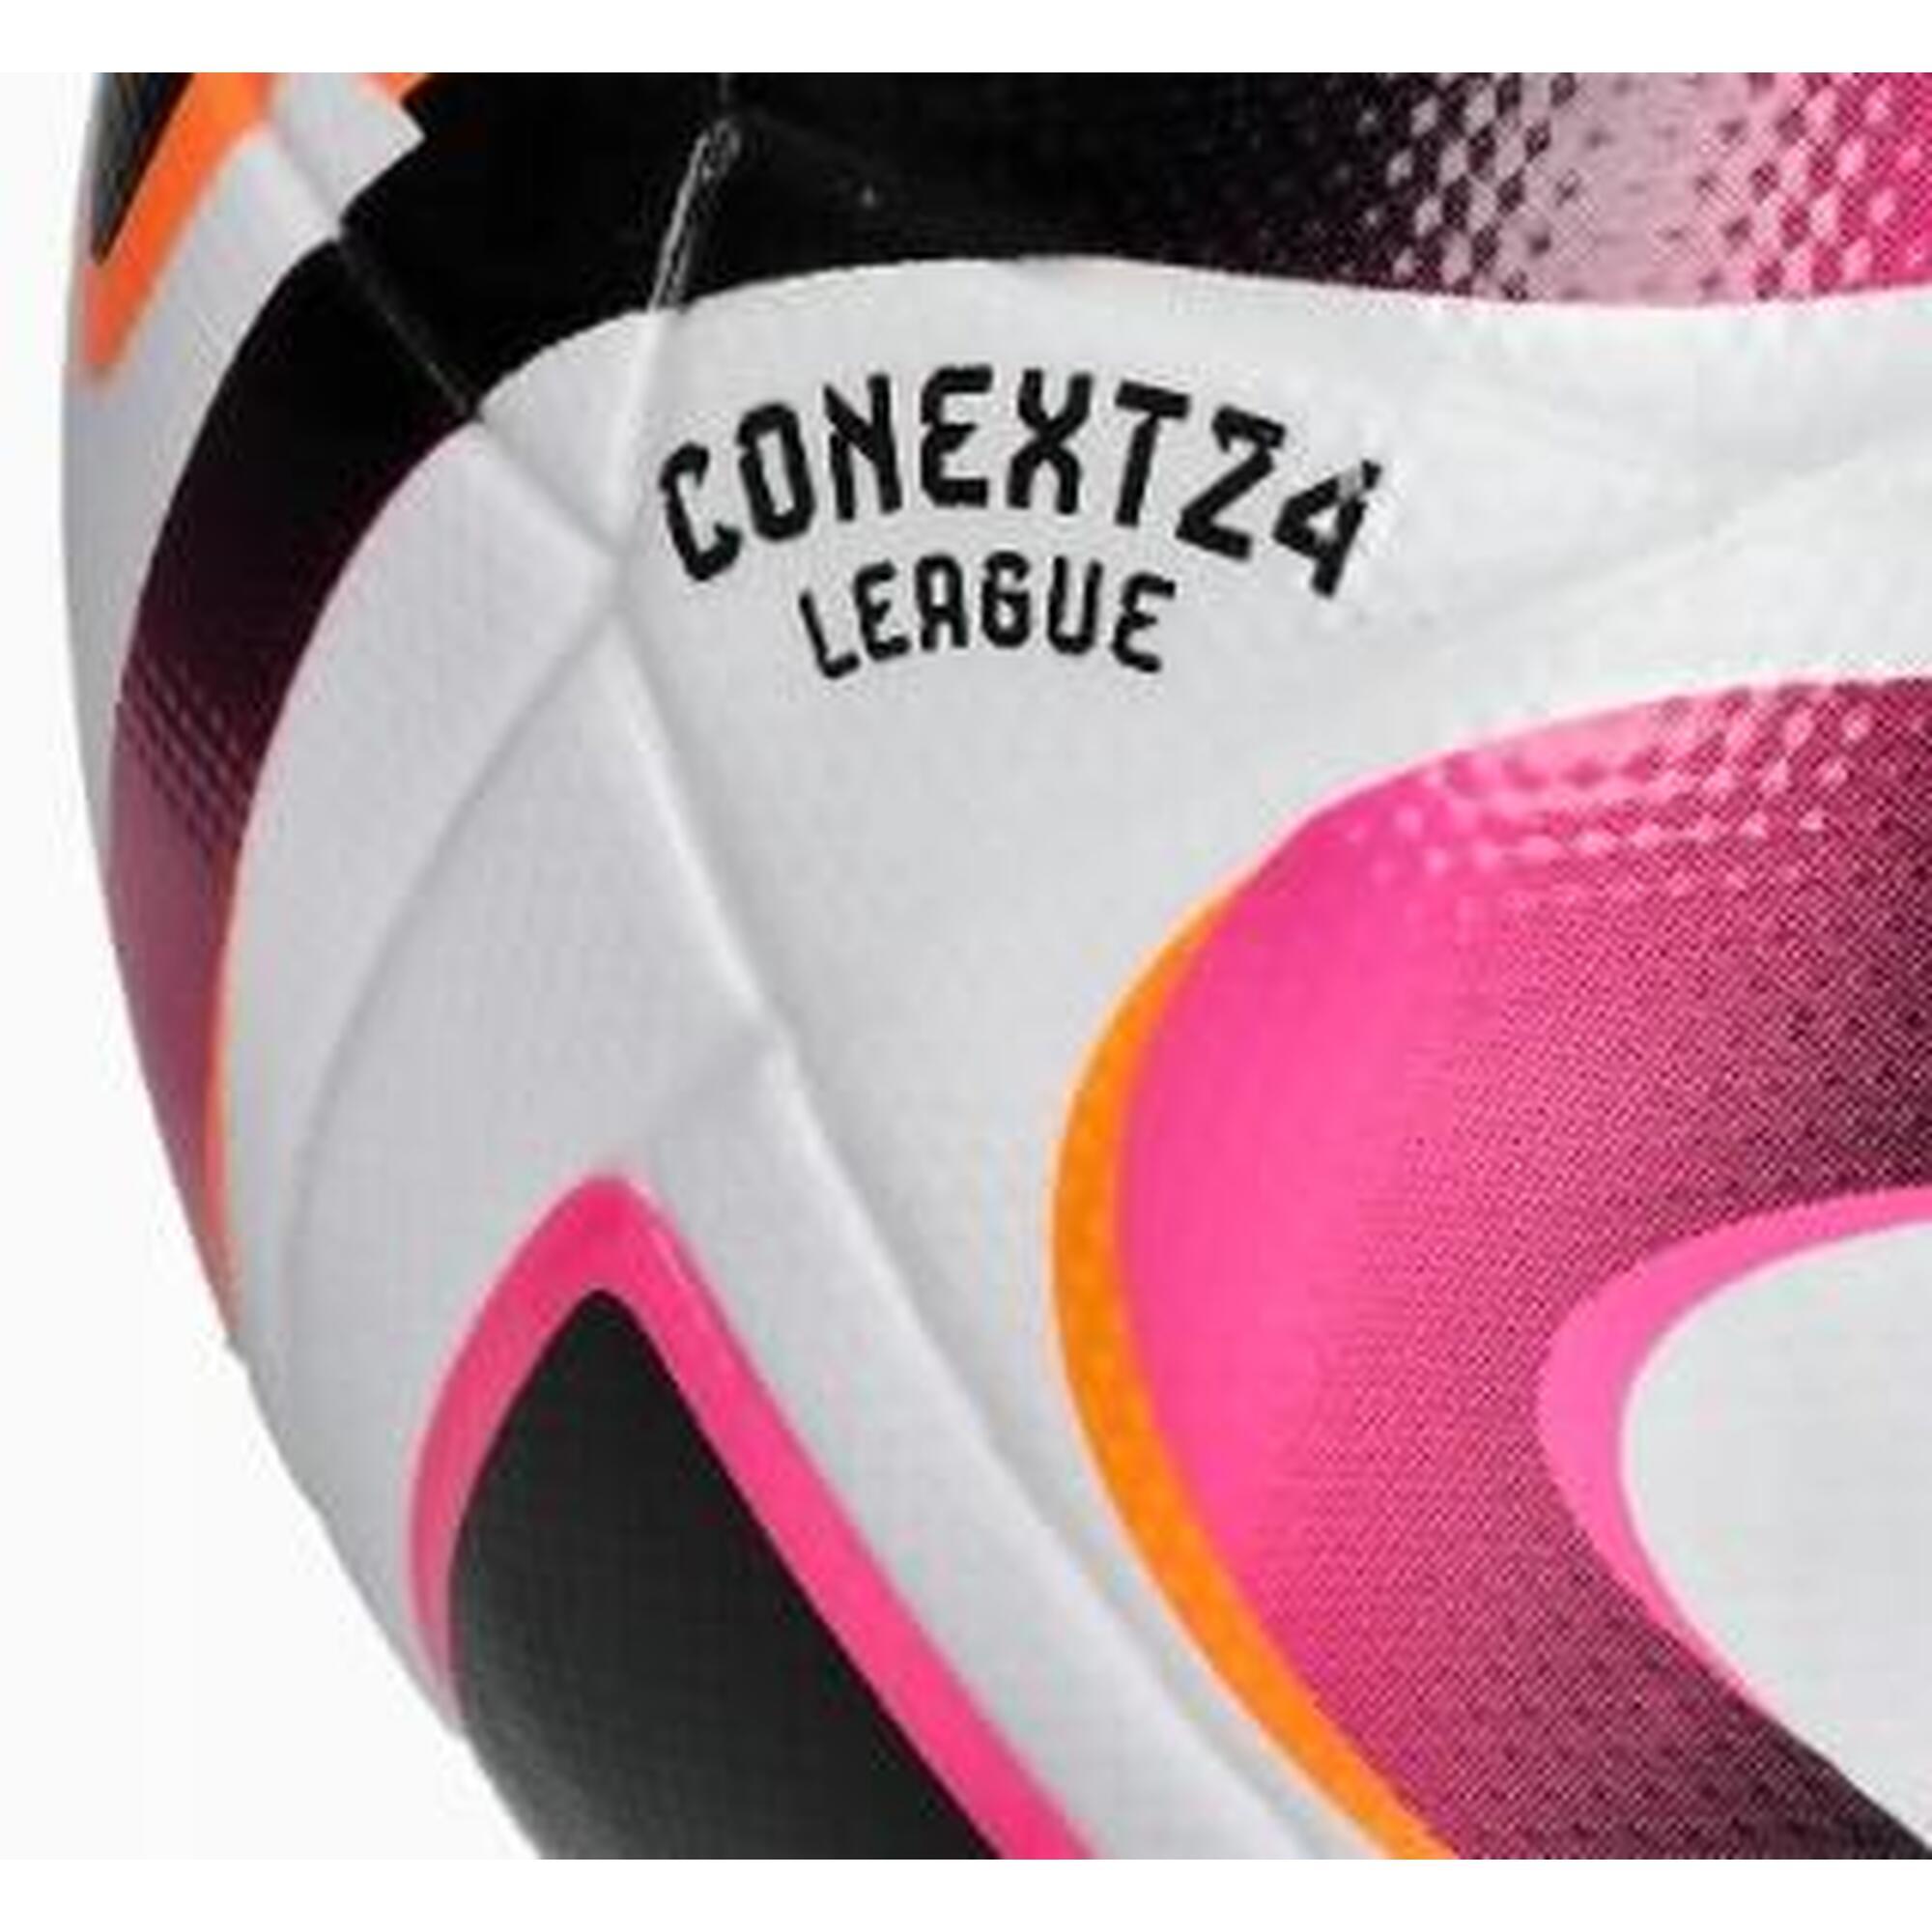 Piłka do piłki nożnej Adidas Conext 24 League treningowa